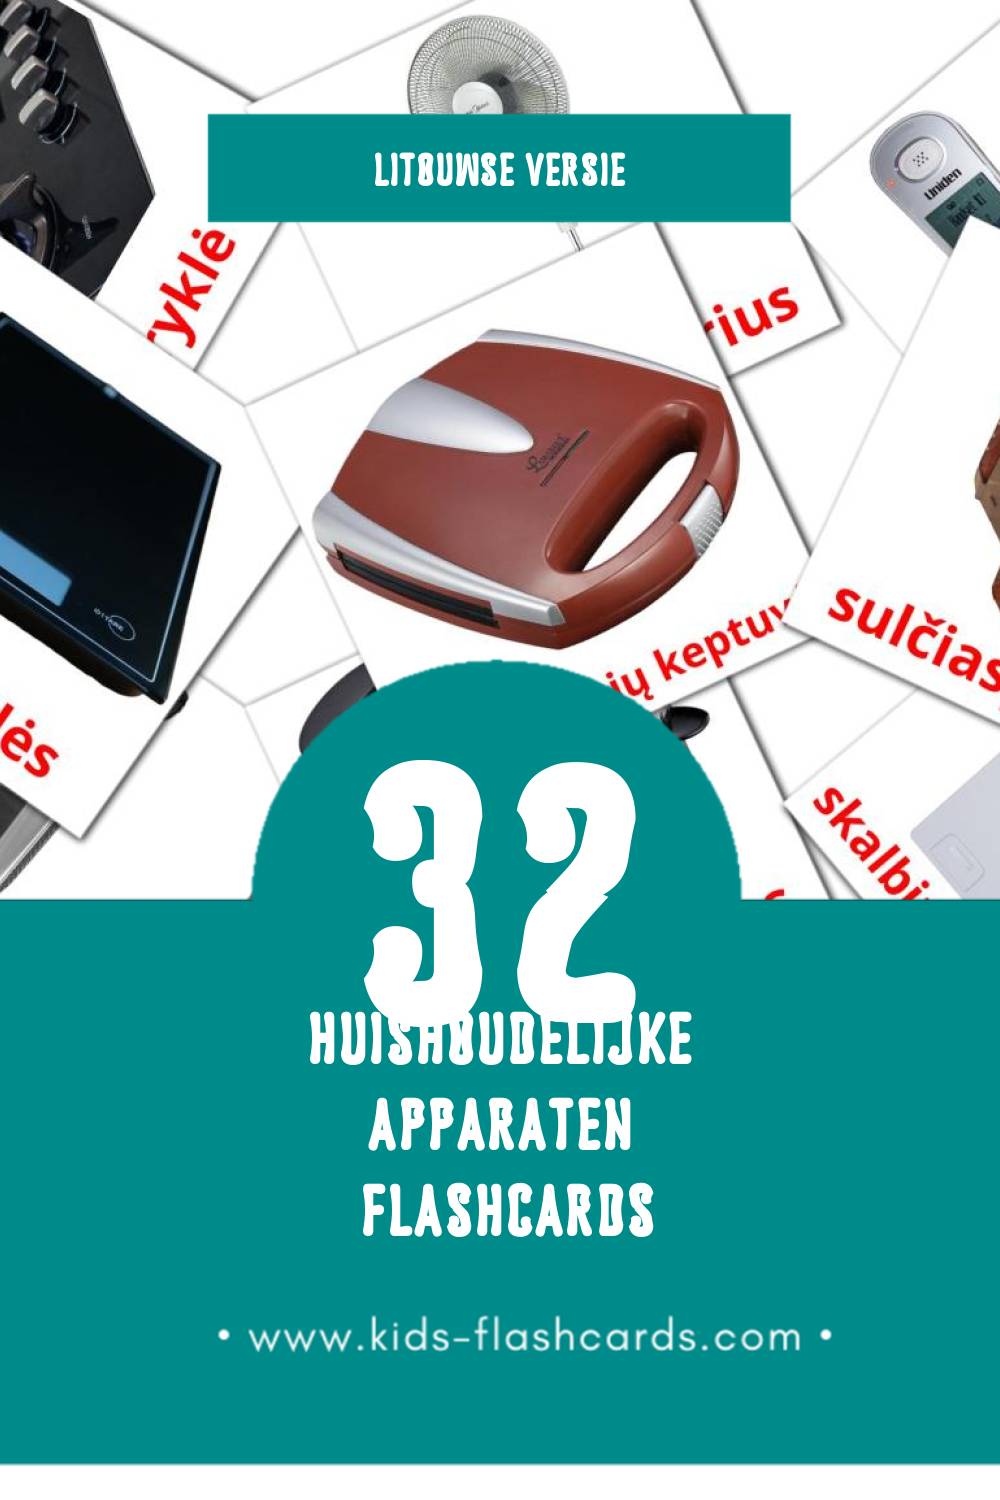 Visuele Buitiniai prietaisai Flashcards voor Kleuters (32 kaarten in het Litouws)